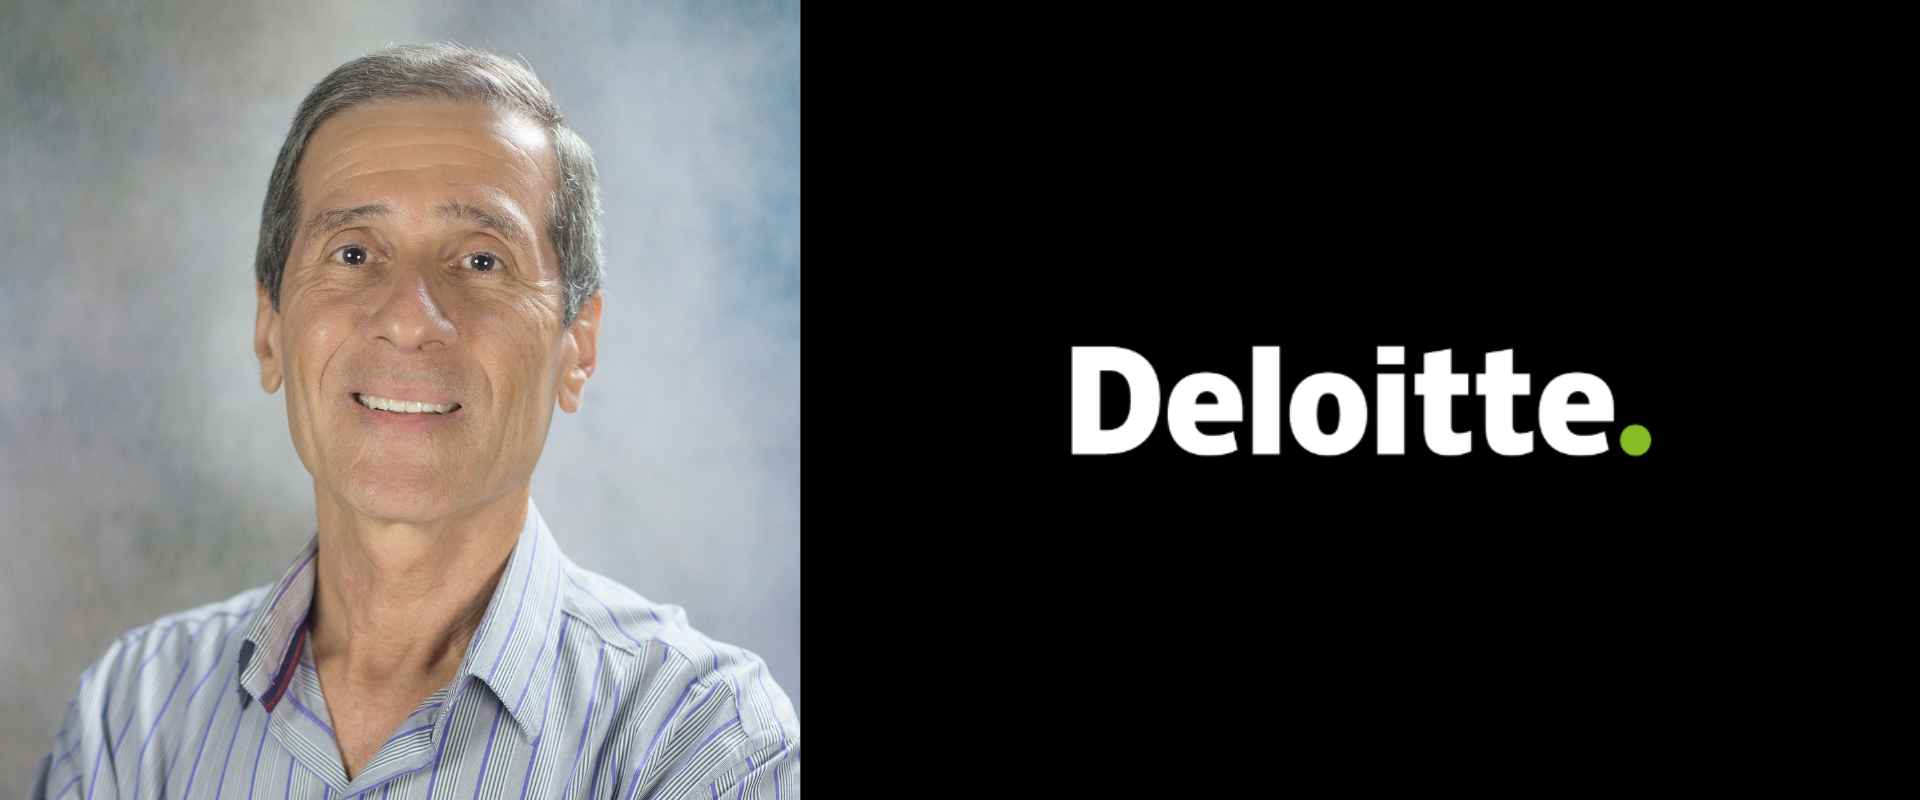 O professor de Finanças e Controle Gerencial, Celso Lemme, foi convidado do podcast Deloitte no assunto: gestão tributária na era ESG. 